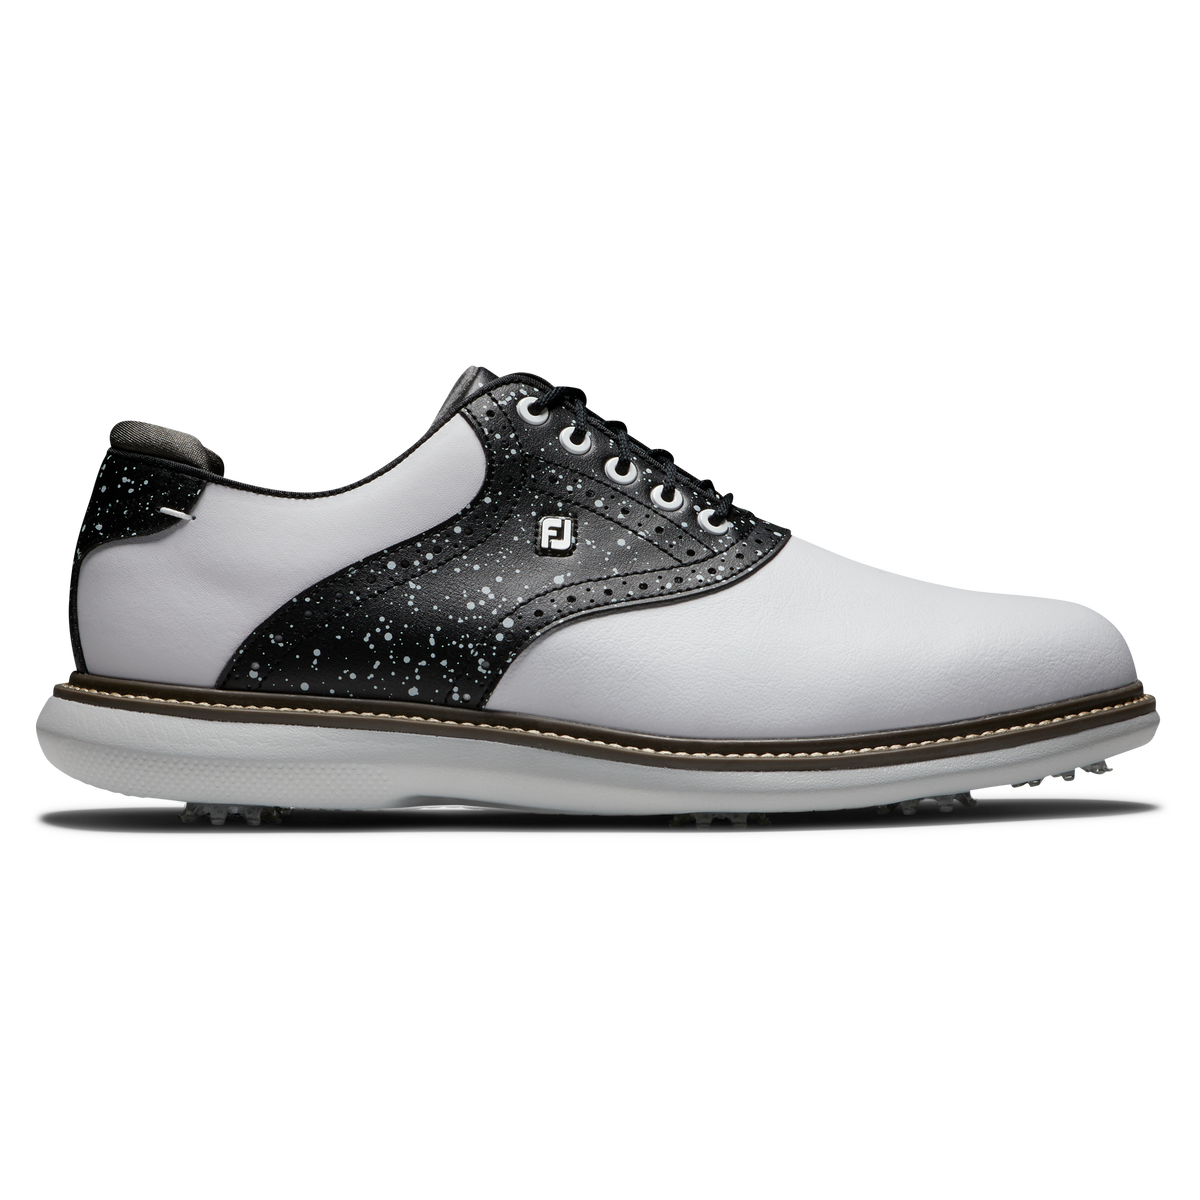 풋조이 맨 골프화 FootJoy Limited Edition Traditions Galaxy Collection Mens Golf Shoe,White/Black